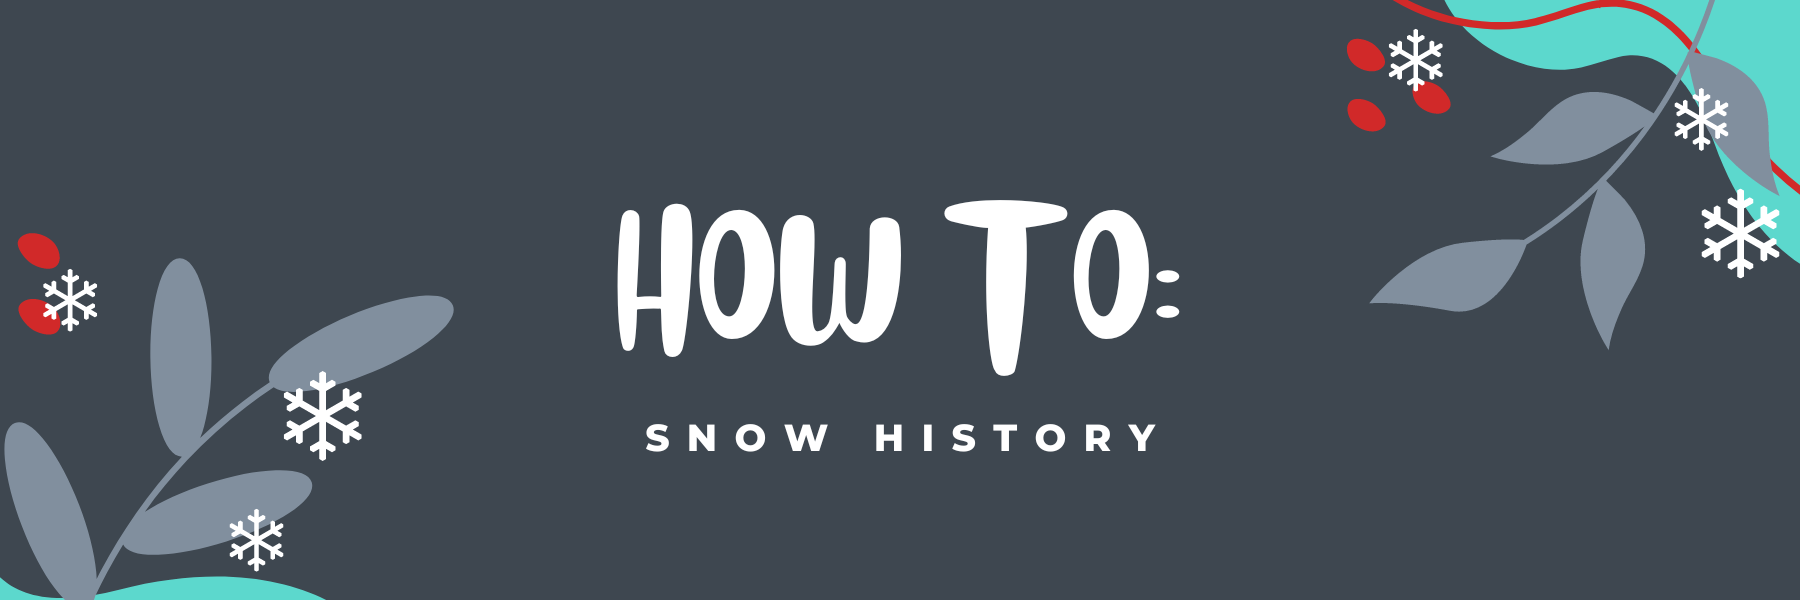 COMMENT FAIRE : Accéder à l'historique de la neige des stations de ski sur notre site Web